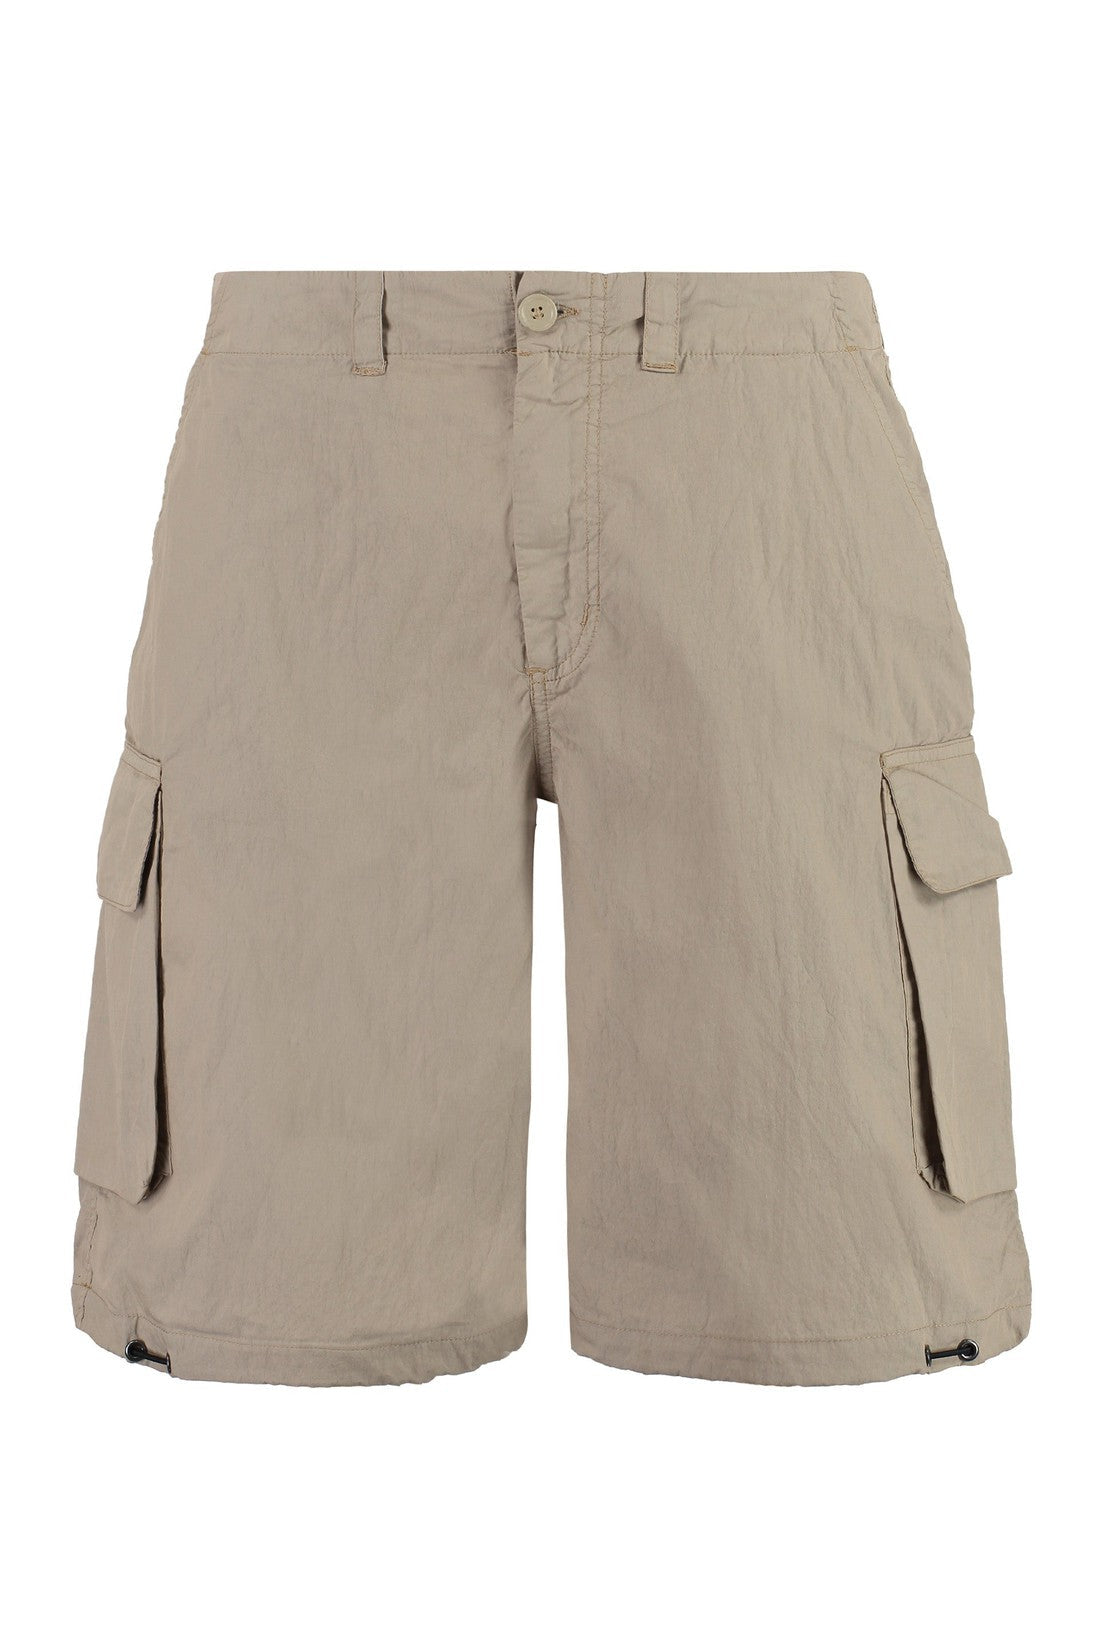 Our Legacy-OUTLET-SALE-Cotton cargo bermuda shorts-ARCHIVIST